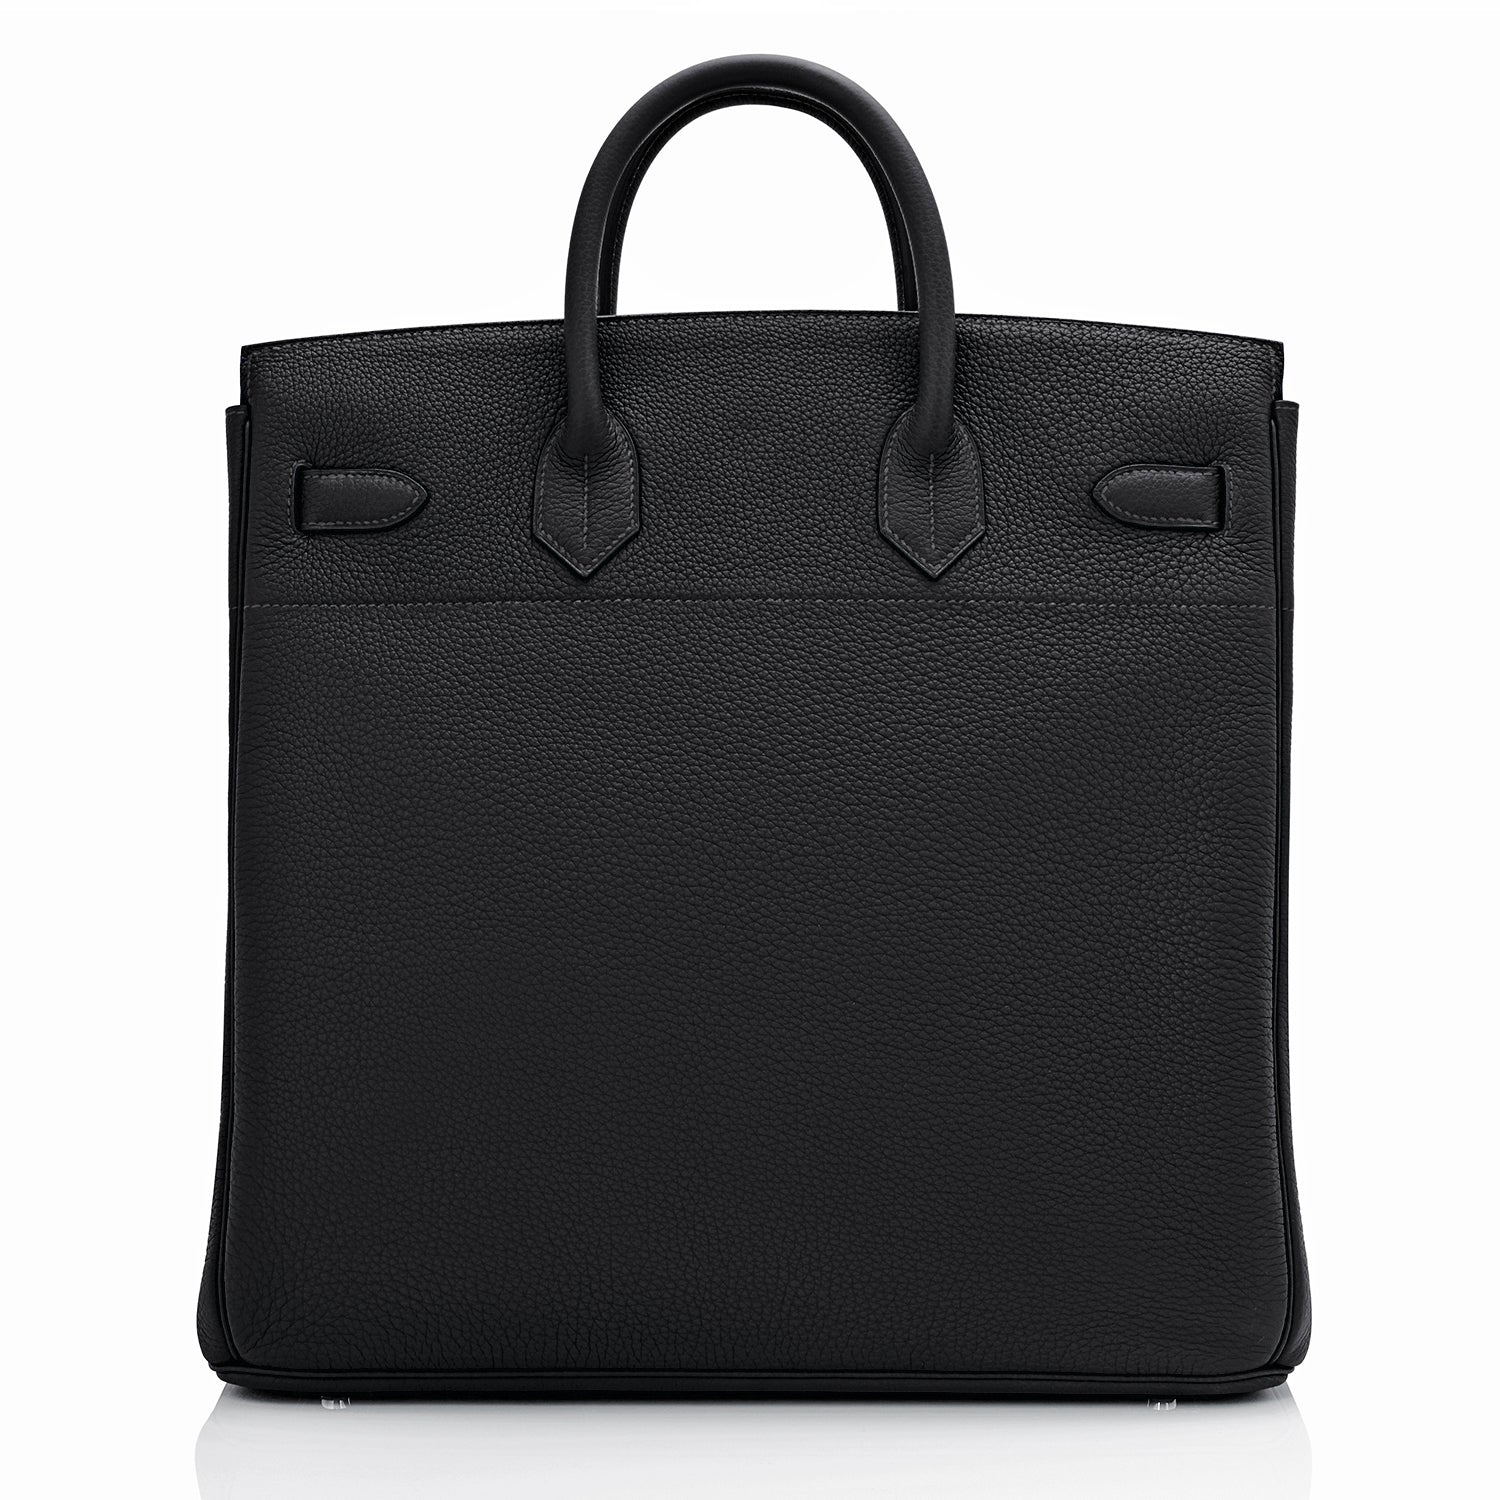 Hermes Hac Bag Versus Birkin Bag